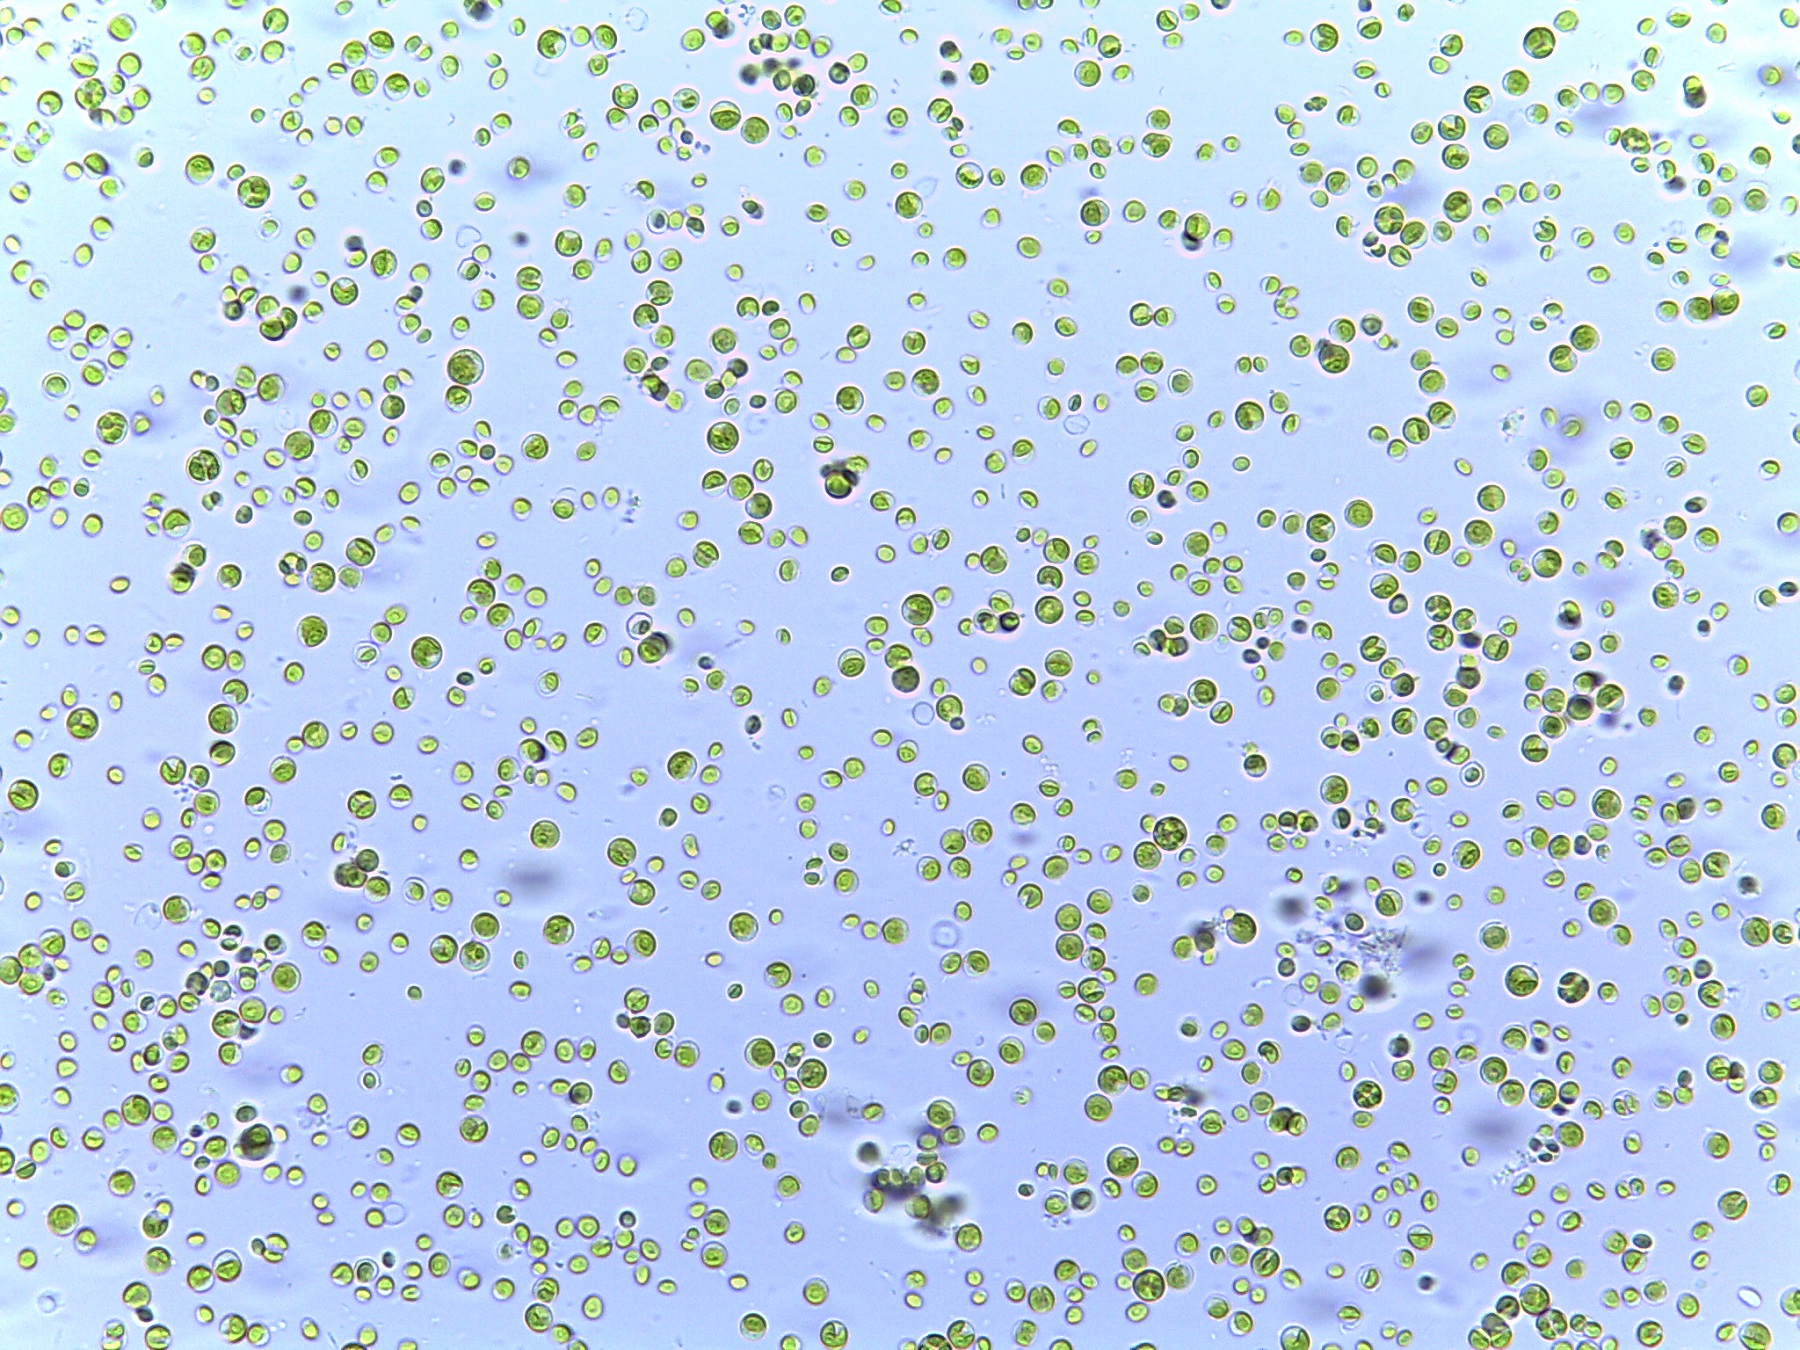 Chlorella vulgaris cells, little green dots